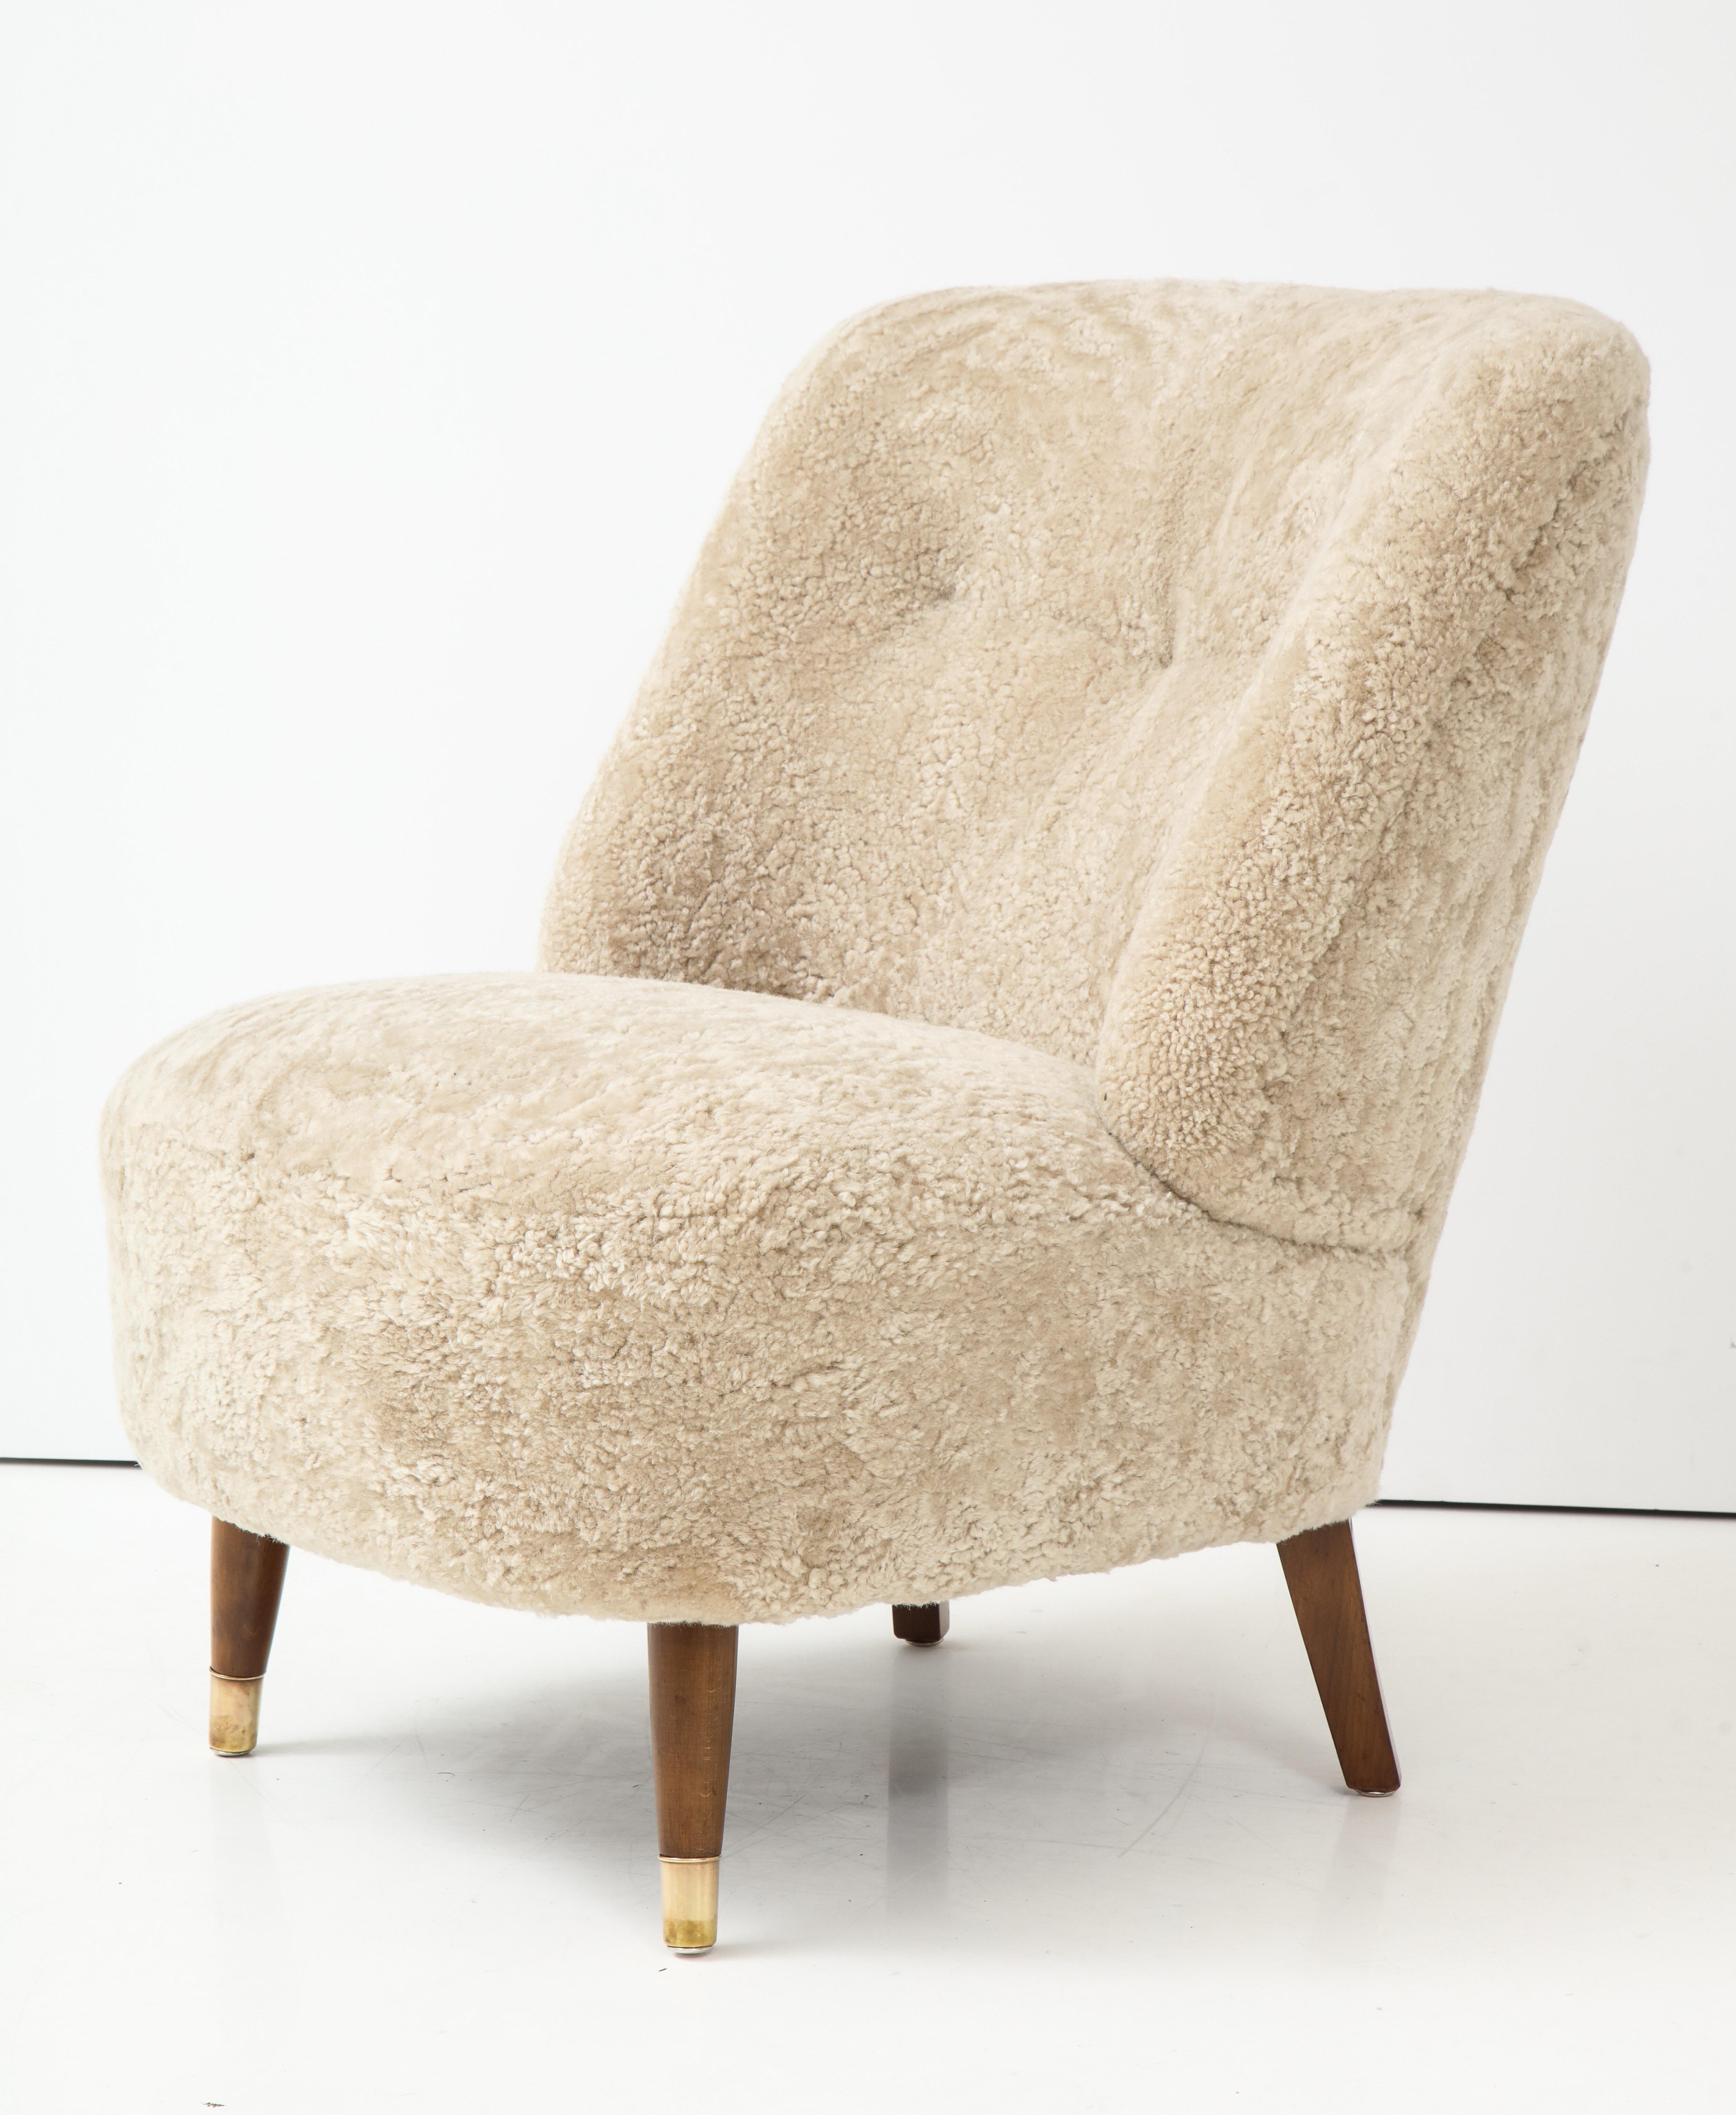 Pair of Danish Design Sheepskin Upholstered Chairs, circa 1930s 3